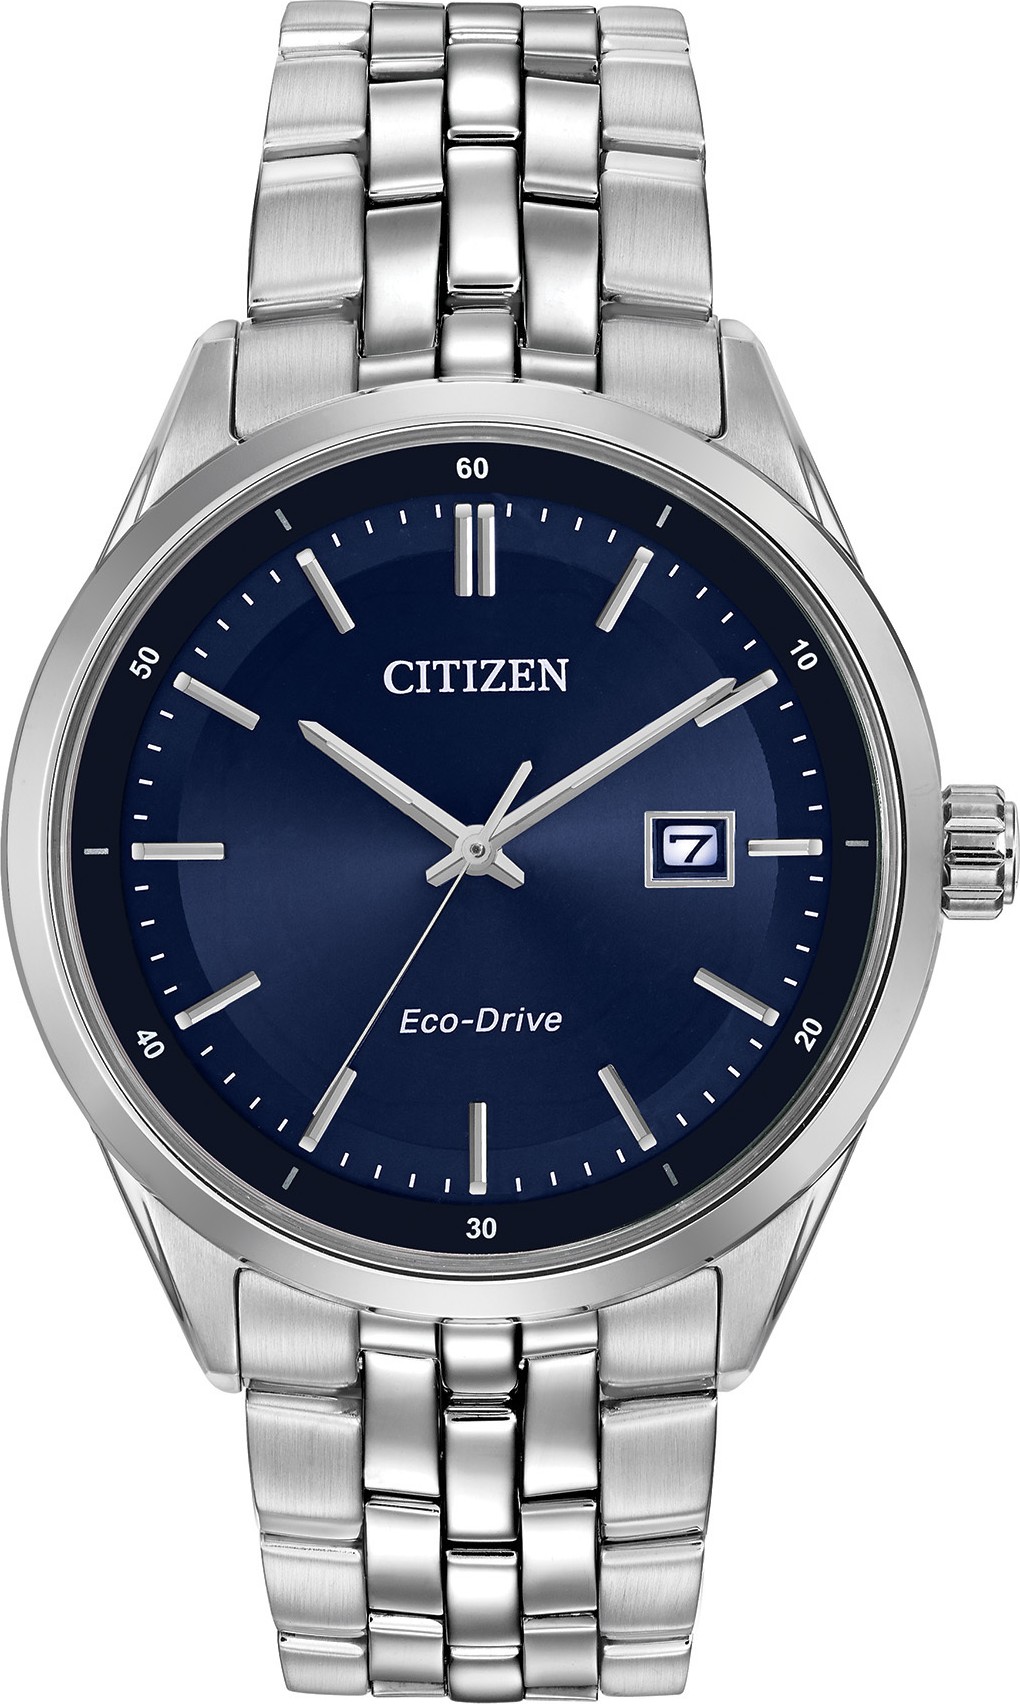 Arriba 81+ imagen citizen eco drive men’s watch